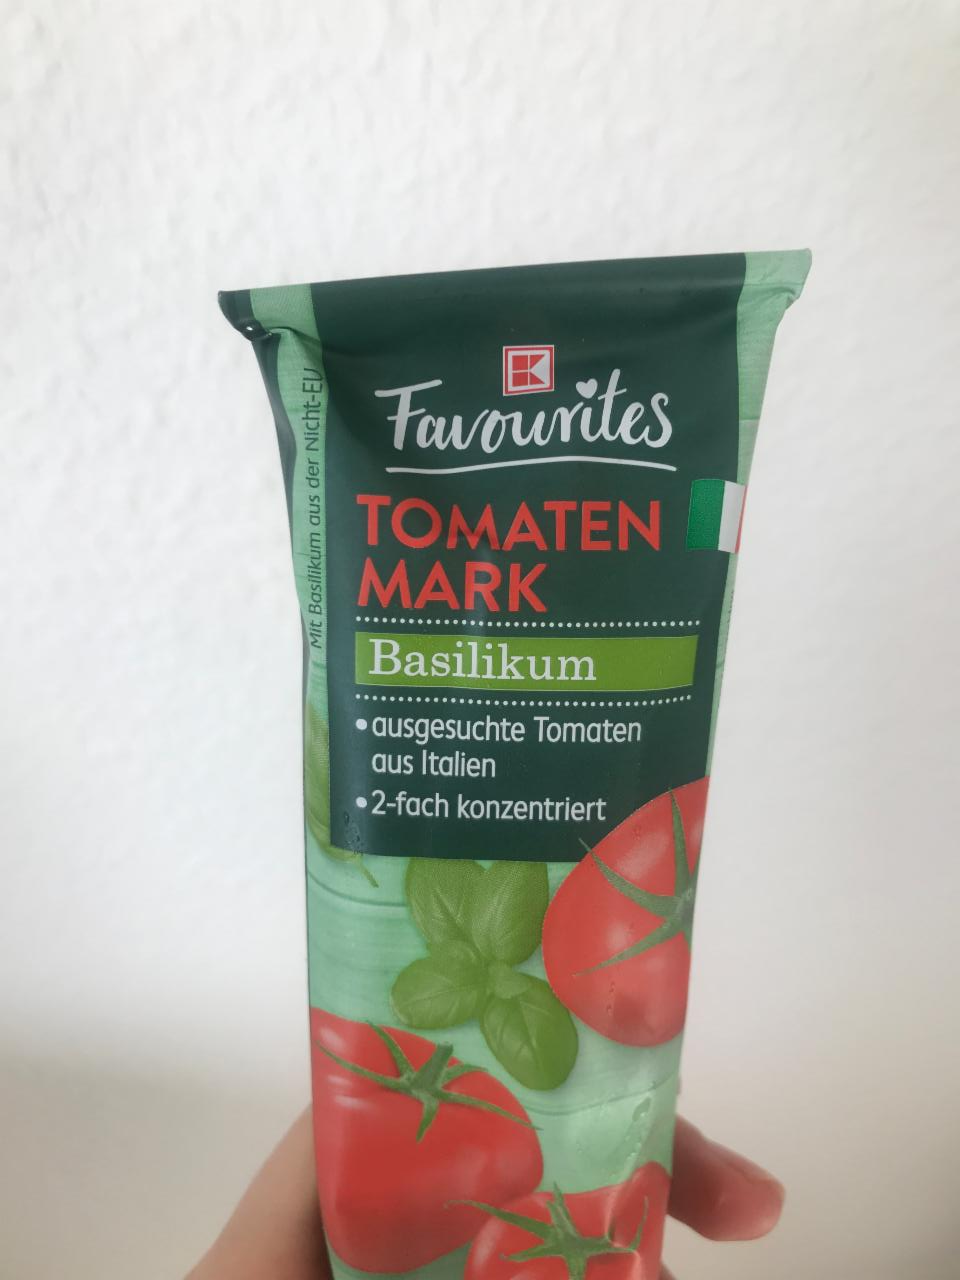 Фото - Томатна паста Tomaten Mark Basilikum K-Classic